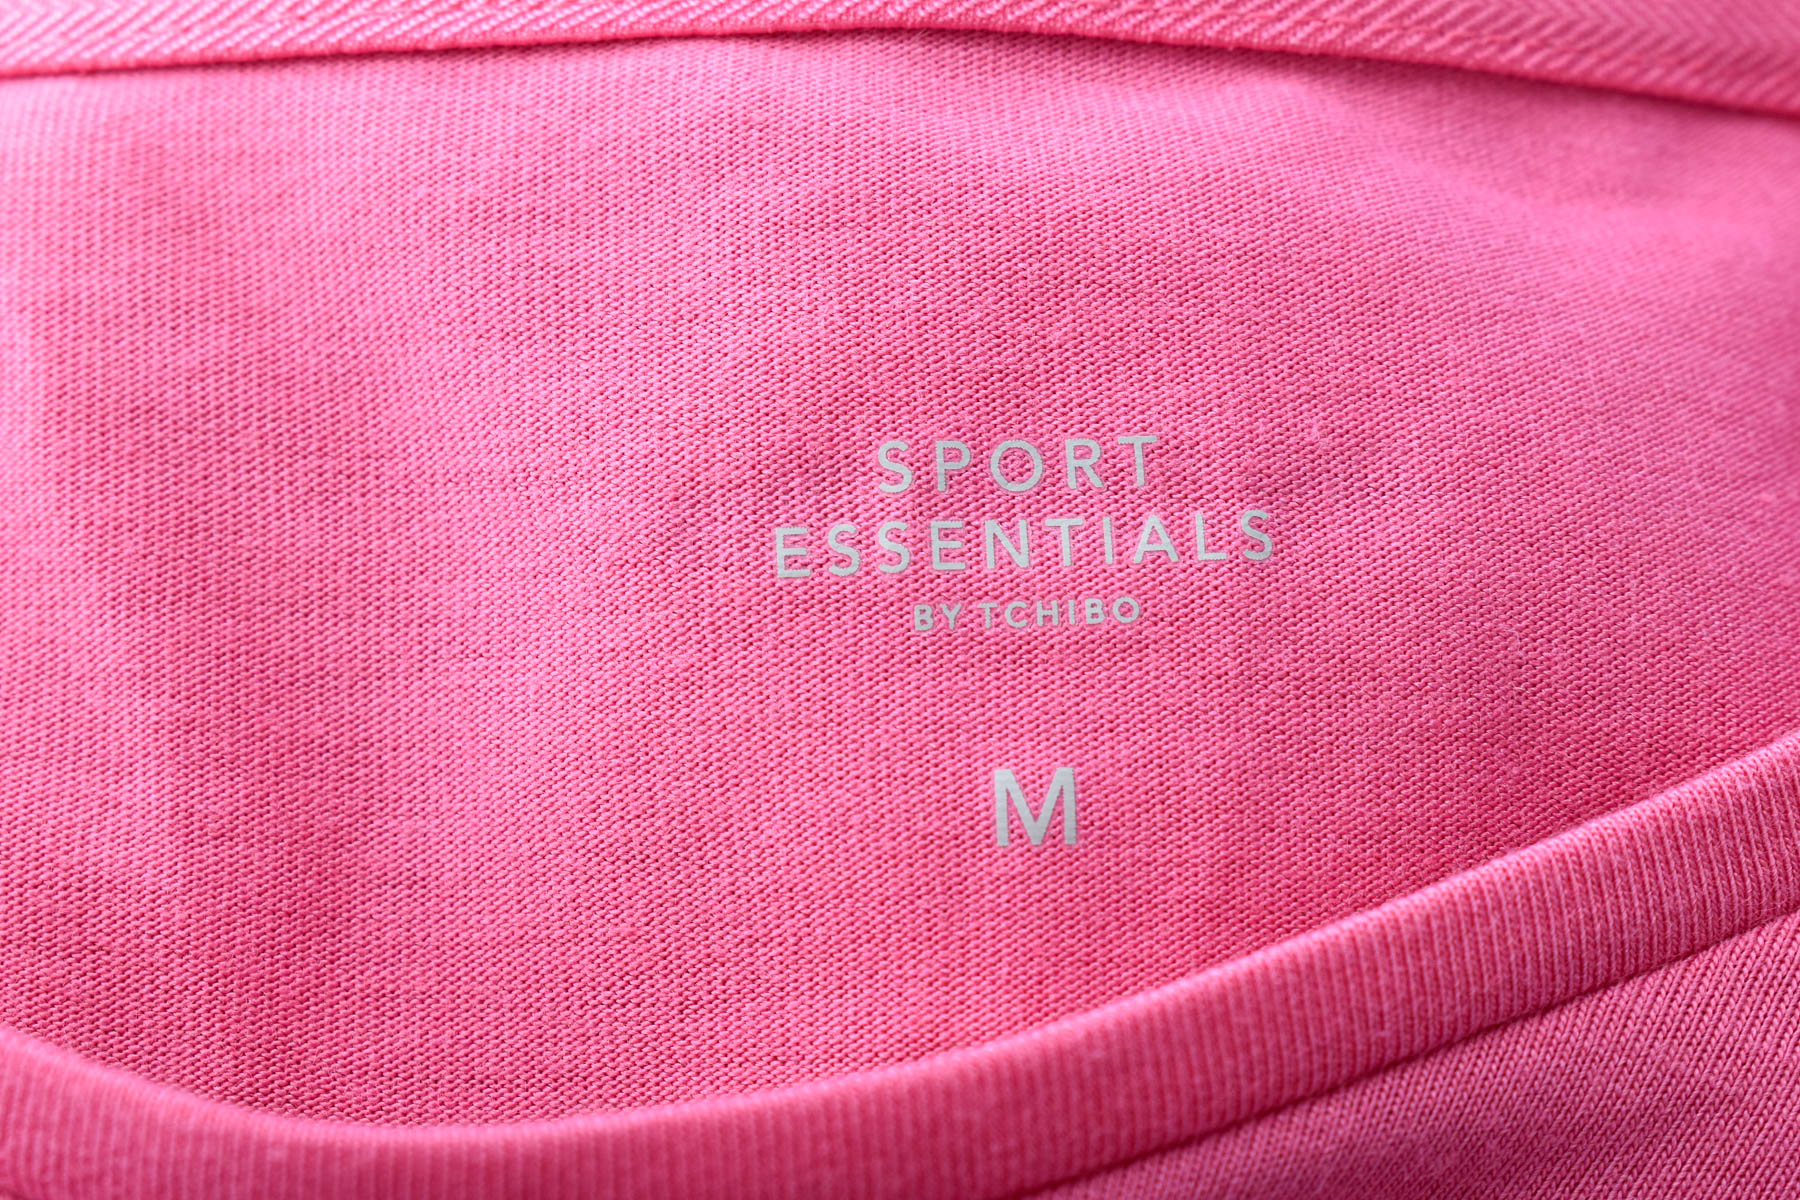 Γυναικεία μπλούζα - Sport Essentials by Tchibo - 2